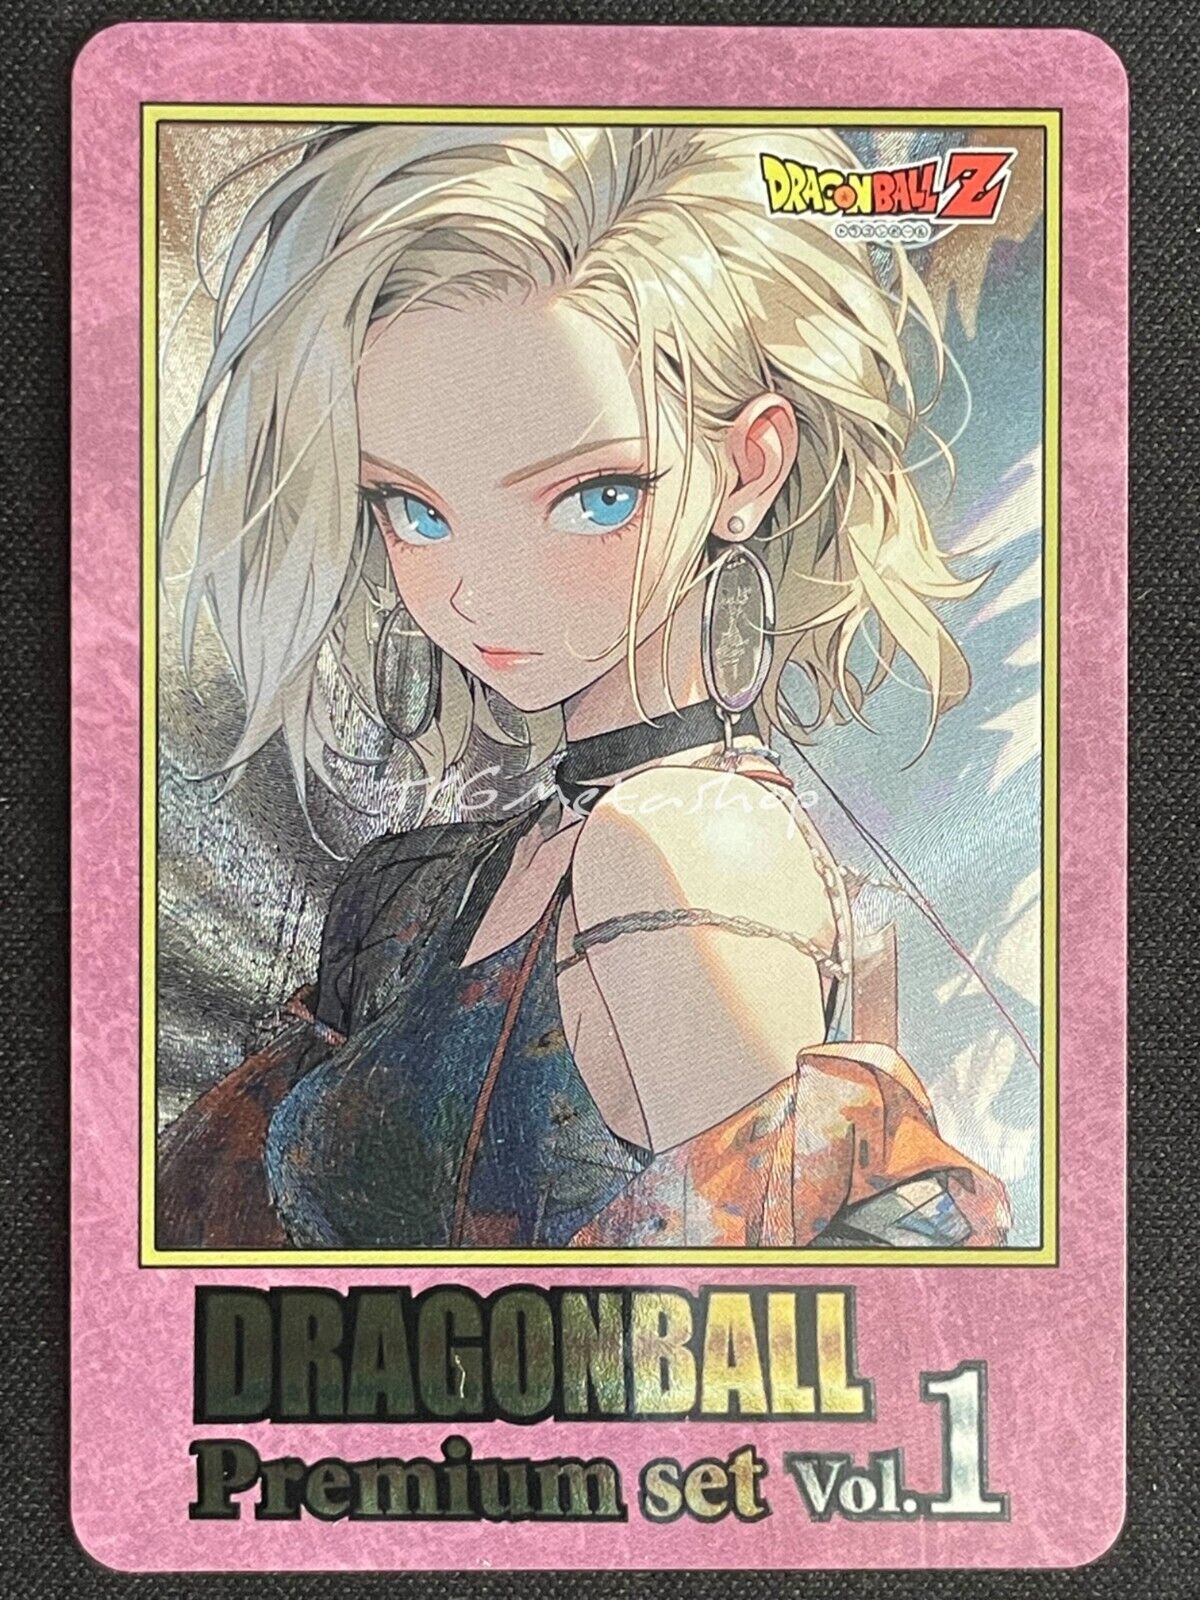 🔥 Android 18 Dragon Ball Goddess Story Anime Card ACG # 2828 🔥